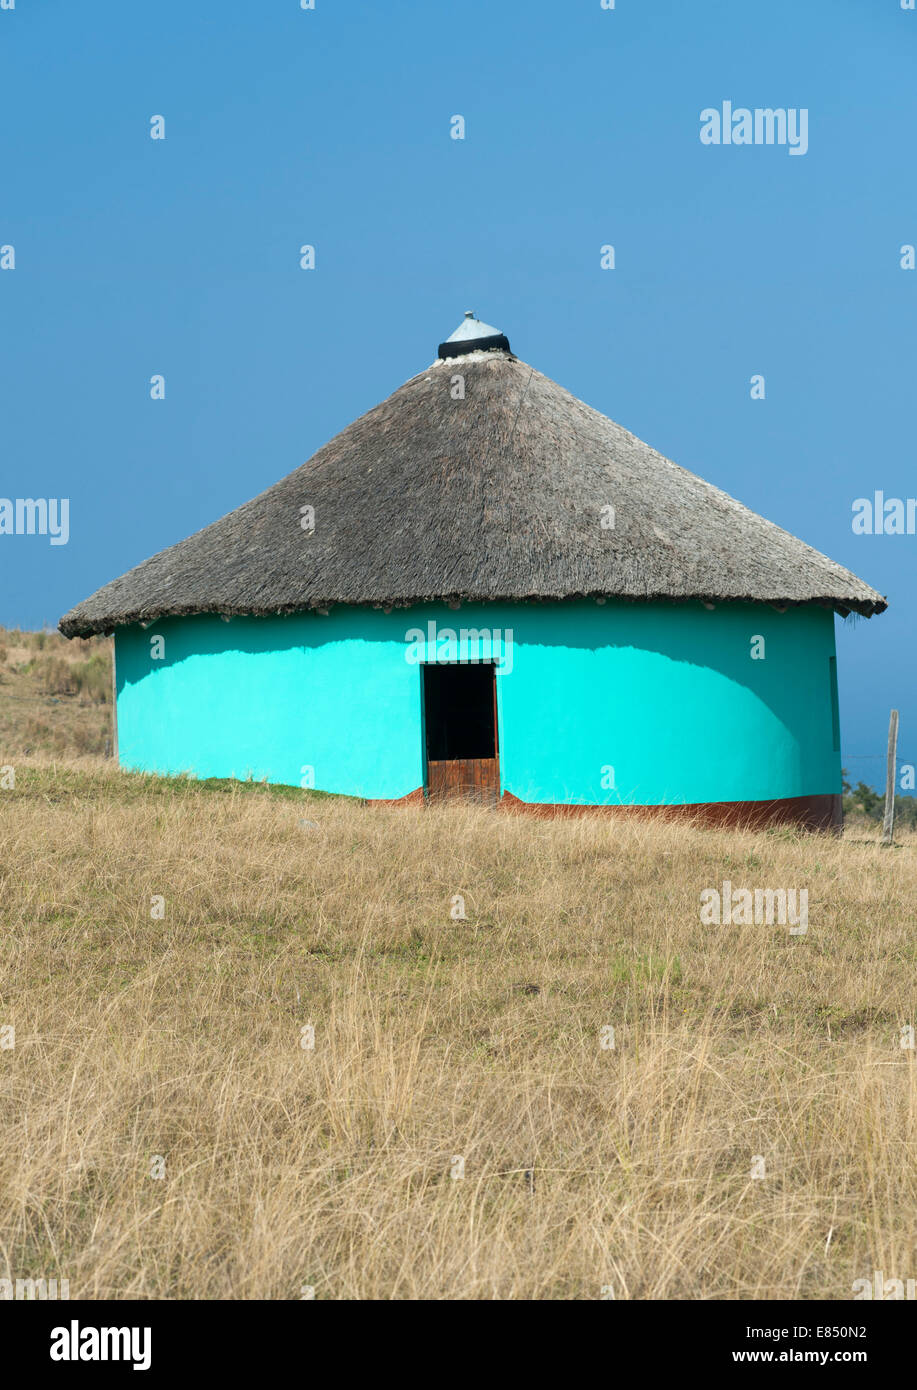 Le xhosa cabane dans la province d'Eastern Cape d'Afrique du Sud. Banque D'Images